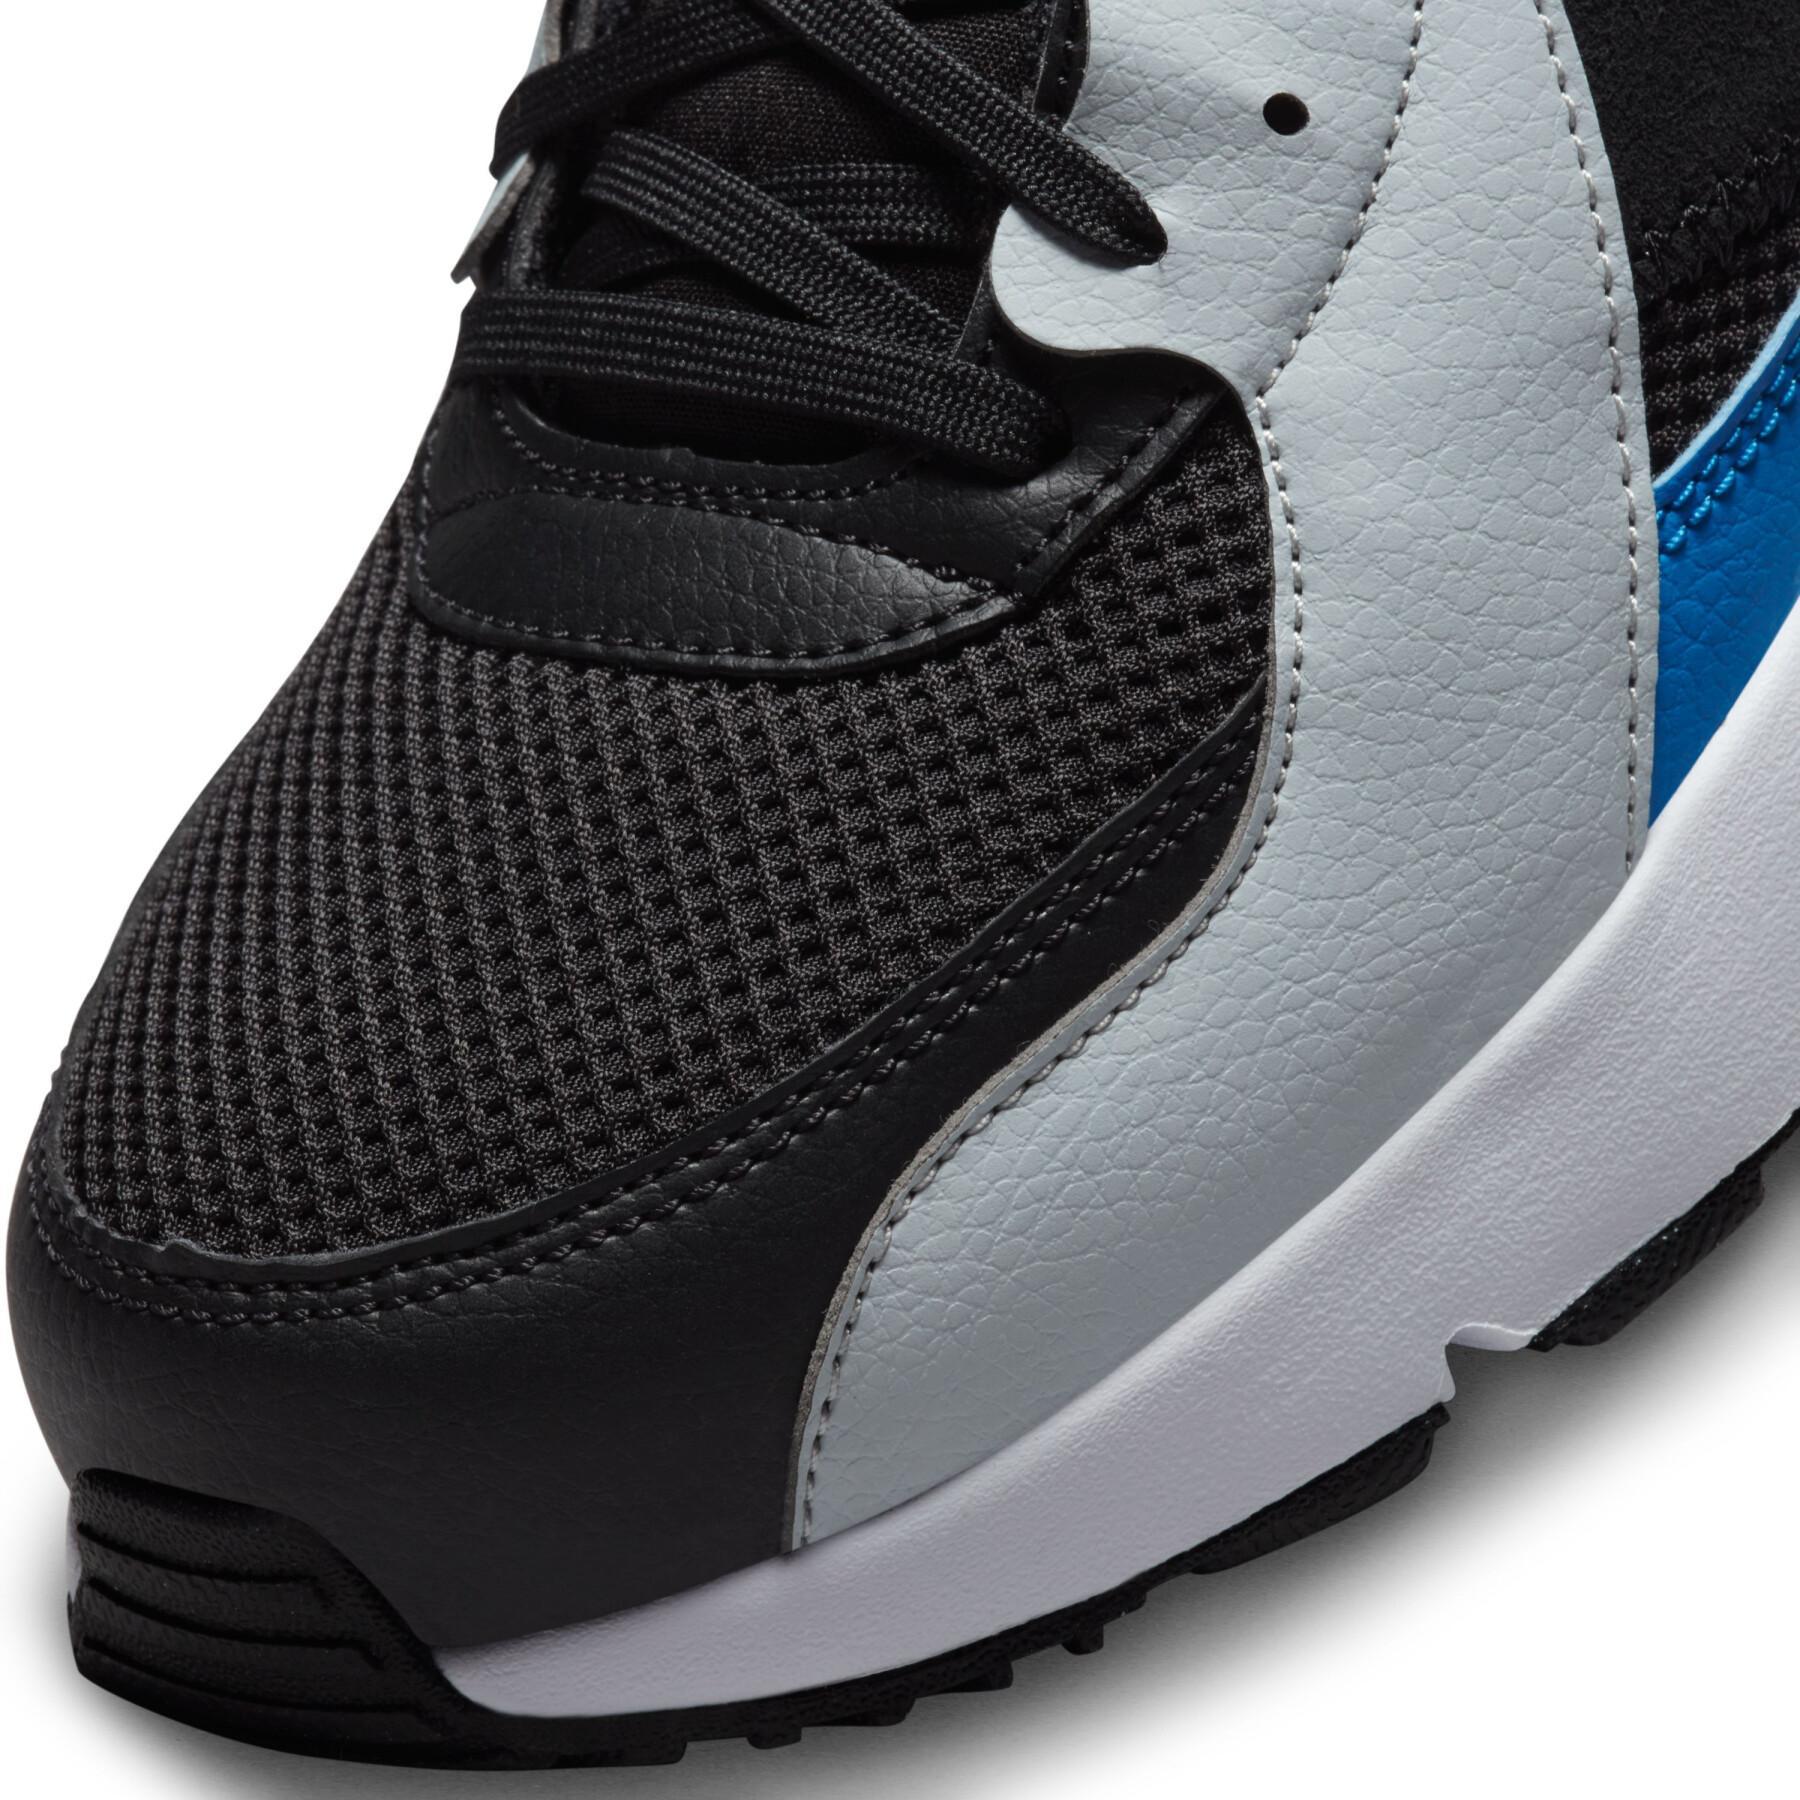 Sneakers Nike Air Max Excee